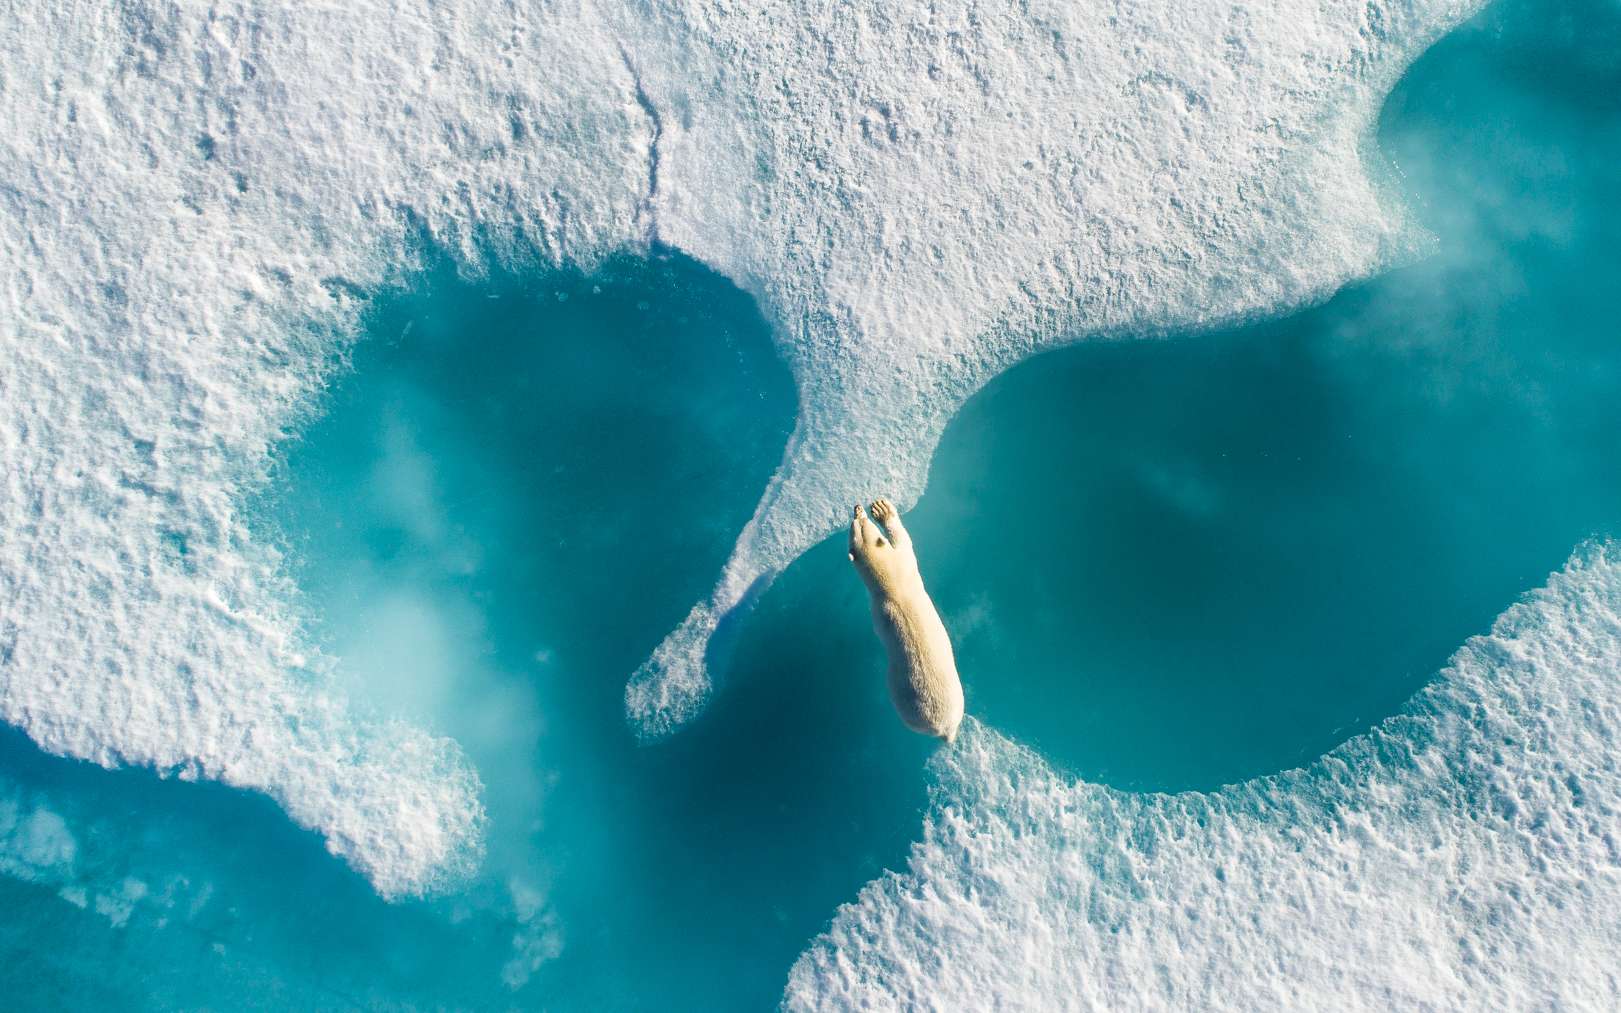 « Il y a des images qui pourraient vous impressionner avec leur maîtrise technique, et puis il y a des images qui vous font ressentir quelque chose. Cette photographie m’a clouée au sol, a déclaré le vidéaste Jarrad Sendj et membre du jury qui lui a décerné le Grand prix drone photo 2017. C’est particulièrement émouvant compte tenu de la crise climatique à laquelle notre monde est confronté en ce moment ». Florian Ledoux écrit : « Chère génération future, j'espère que vous pourrez toujours voir la faune arctique comme nous le faisons aujourd'hui. Dans son environnement qui change, elle est menacée. J'ai pu assister à de nombreuses scènes de la vie sauvage et celles-ci sont les plus belles choses que j'ai vues. Comme cette photo unique au-dessus d'un ours polaire au Nunavut, dans la région de Baffin, traversant la banquise qui fond en été de plus en plus ». © Florian Ledoux